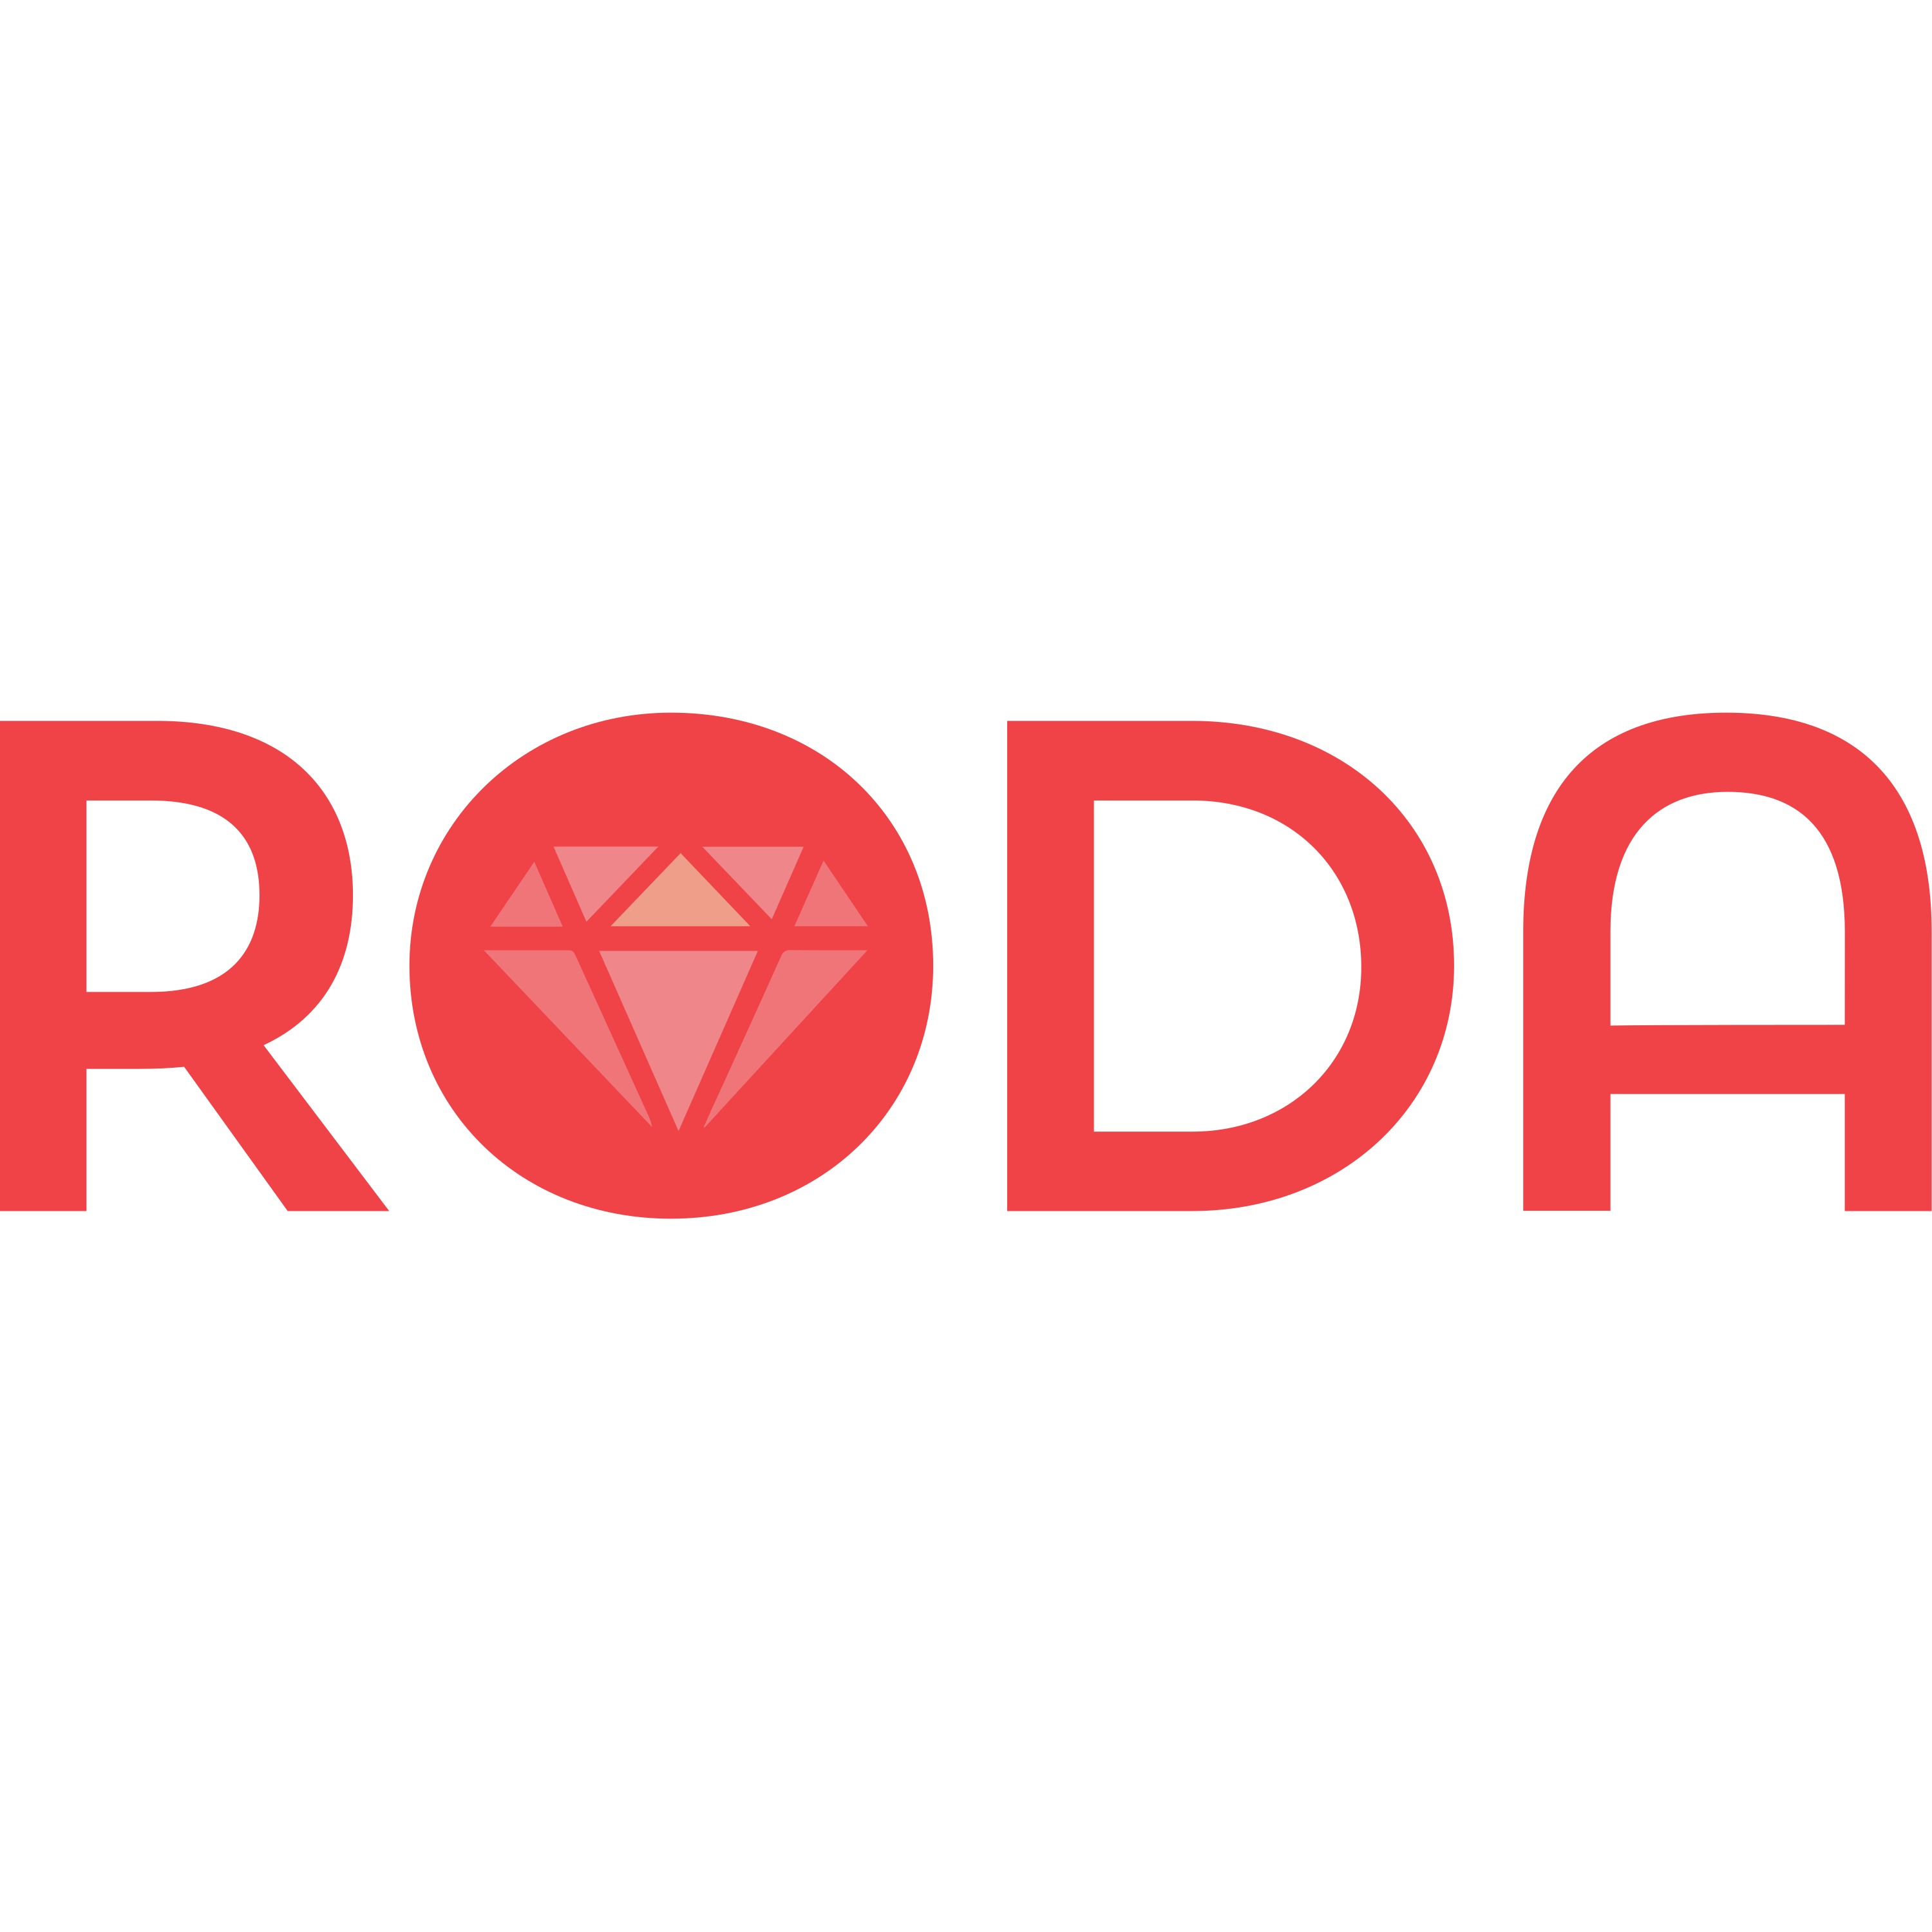 Roda Logo Transparent Image